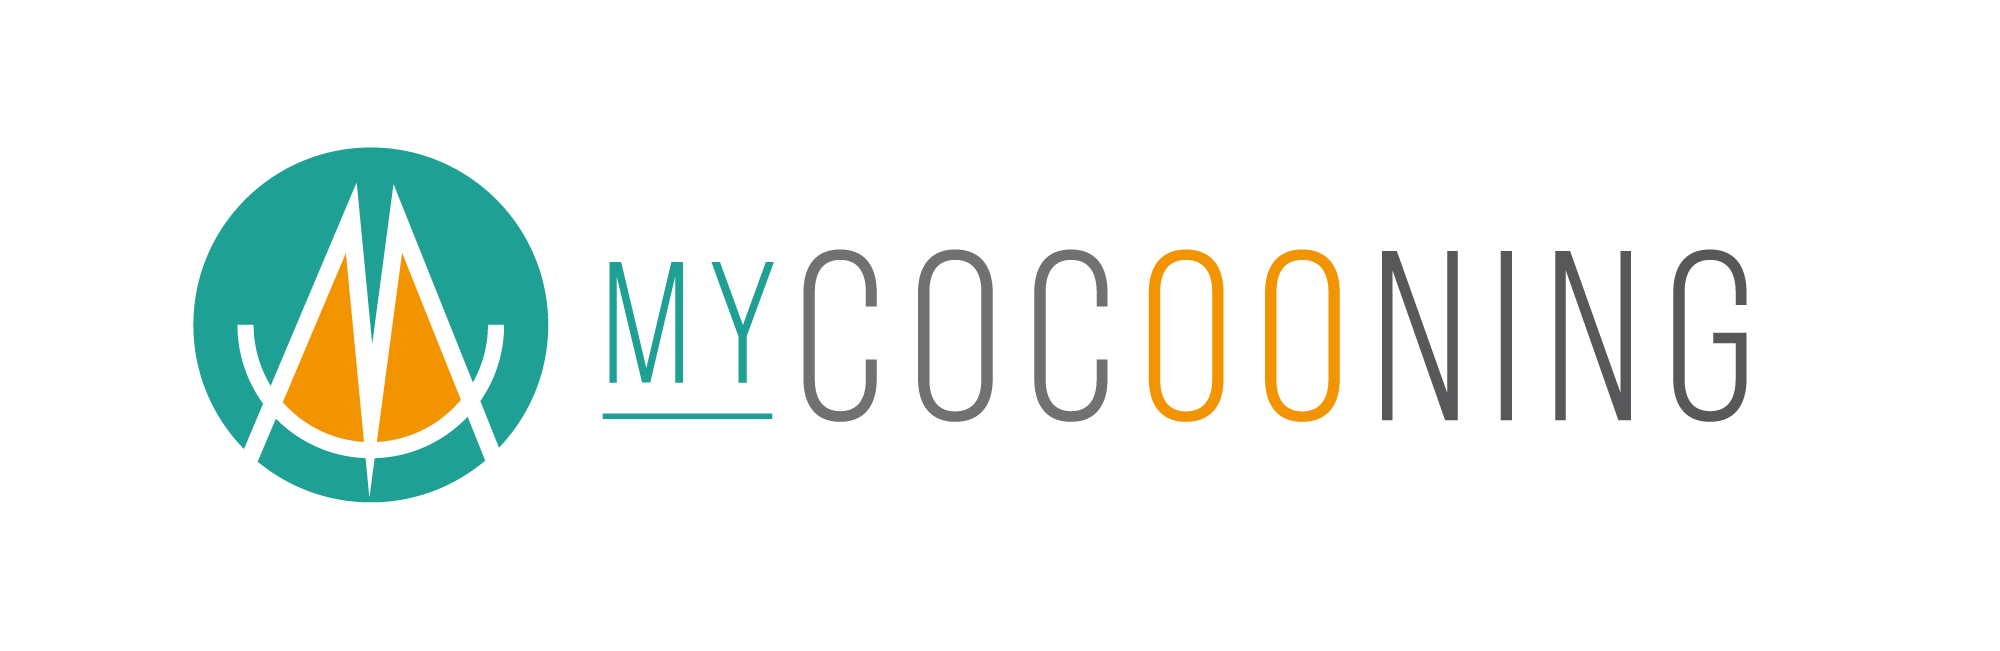 Logo MyCocooning